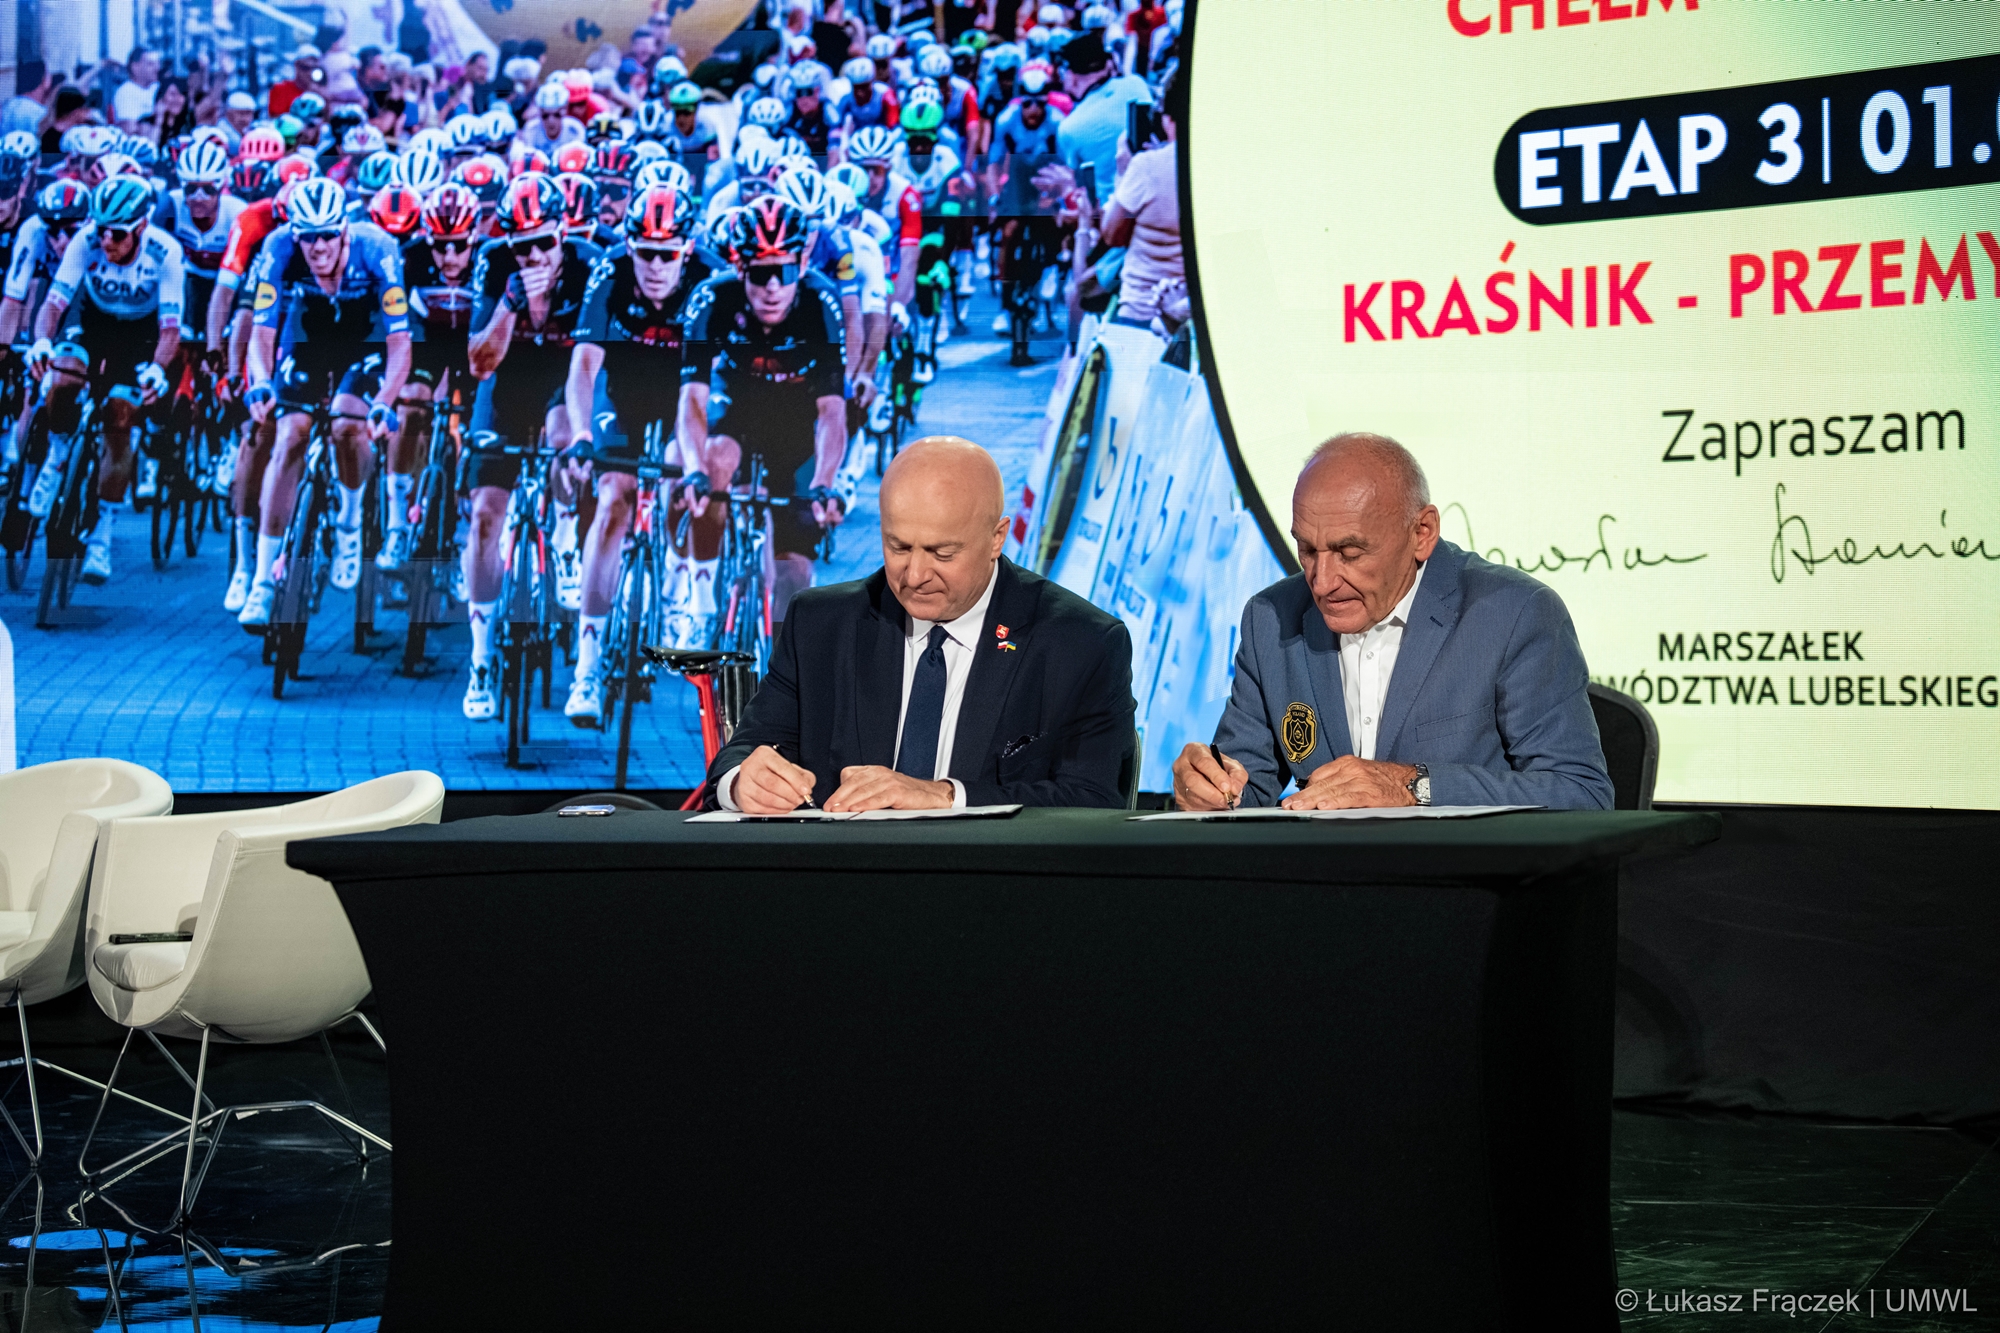 Na zdjęciu widzimy Marszałka Województwa Lubelskiego Jarosława Stawiarskiego i Czesława Langa dyrektora generalnego wyścigu Tour de Pologne, którzy podpisują umowę na organizację tego wyścigu. Za ich plecami, na dużym ekranie zdjęcie przedstawiające grupę kolarzy oraz trasa jednego z etapów.